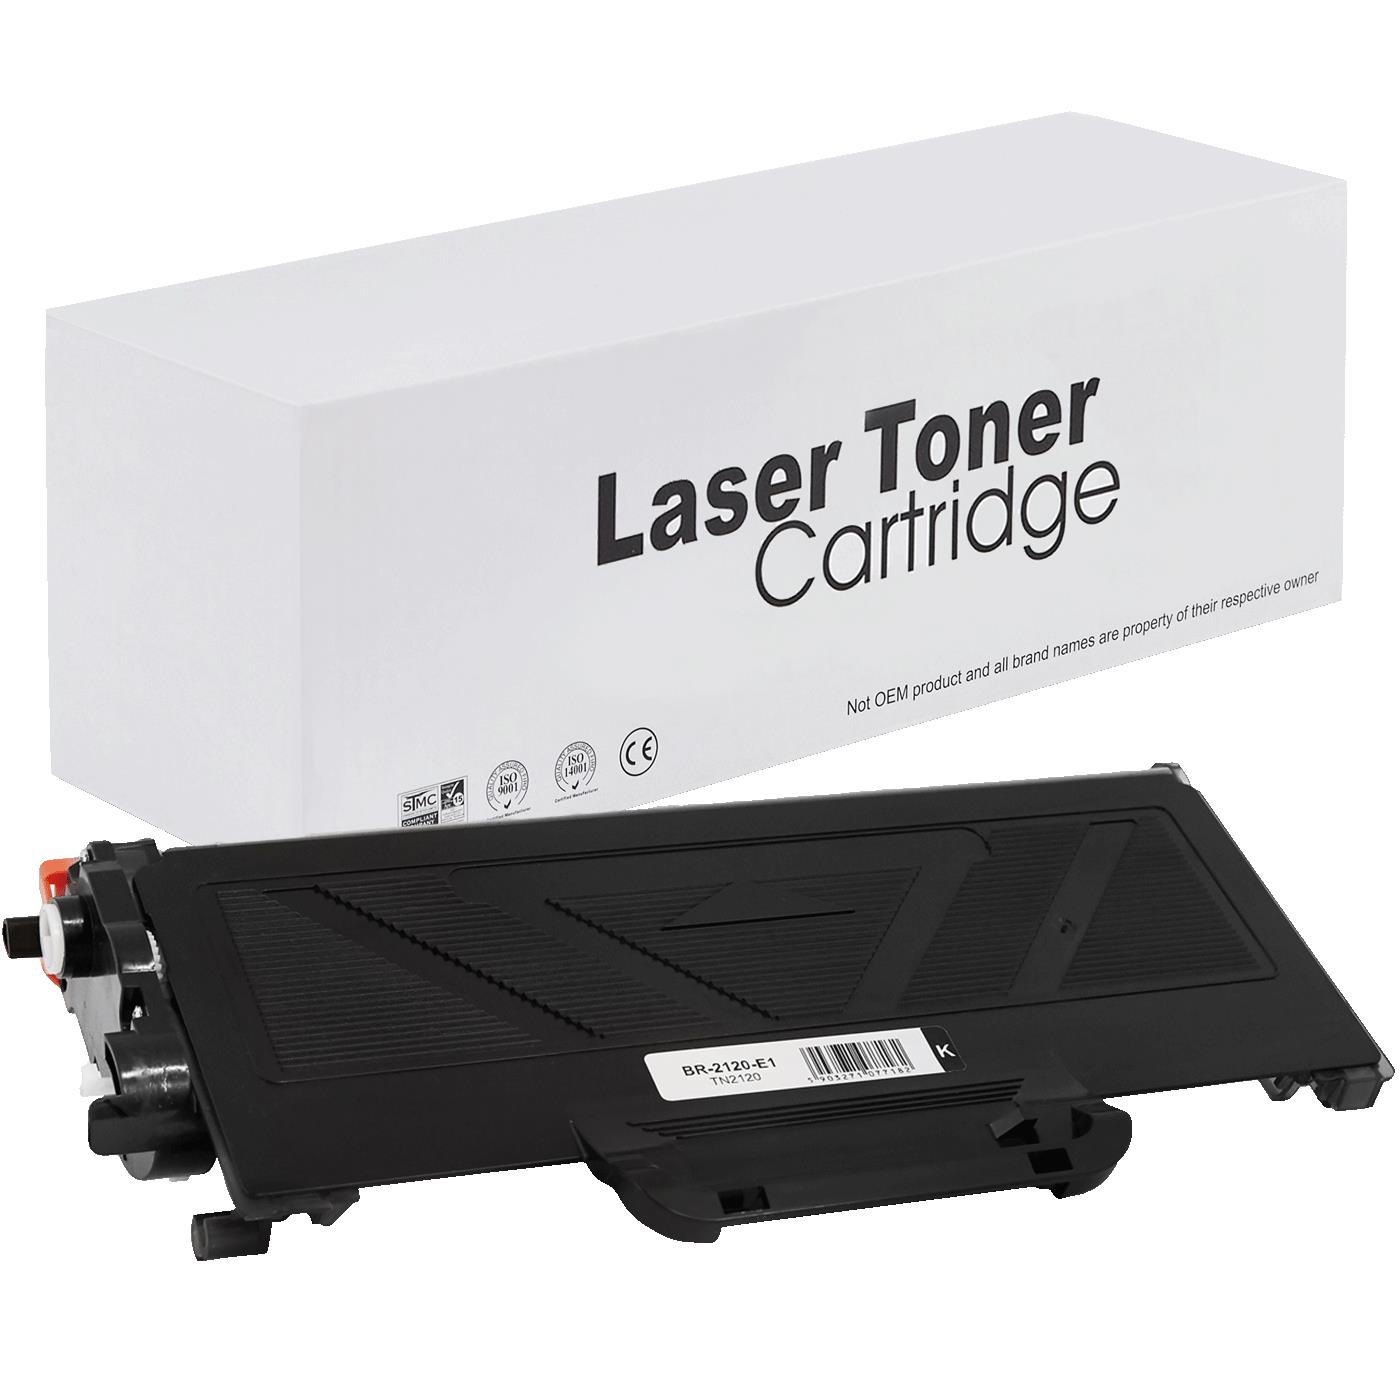 съвместима тонер касета за принтери и печатащи устройства на Brother DCP 7040 Toner BR-2120 | TN2120. Ниски цени, прецизно изпълнение, високо качество.